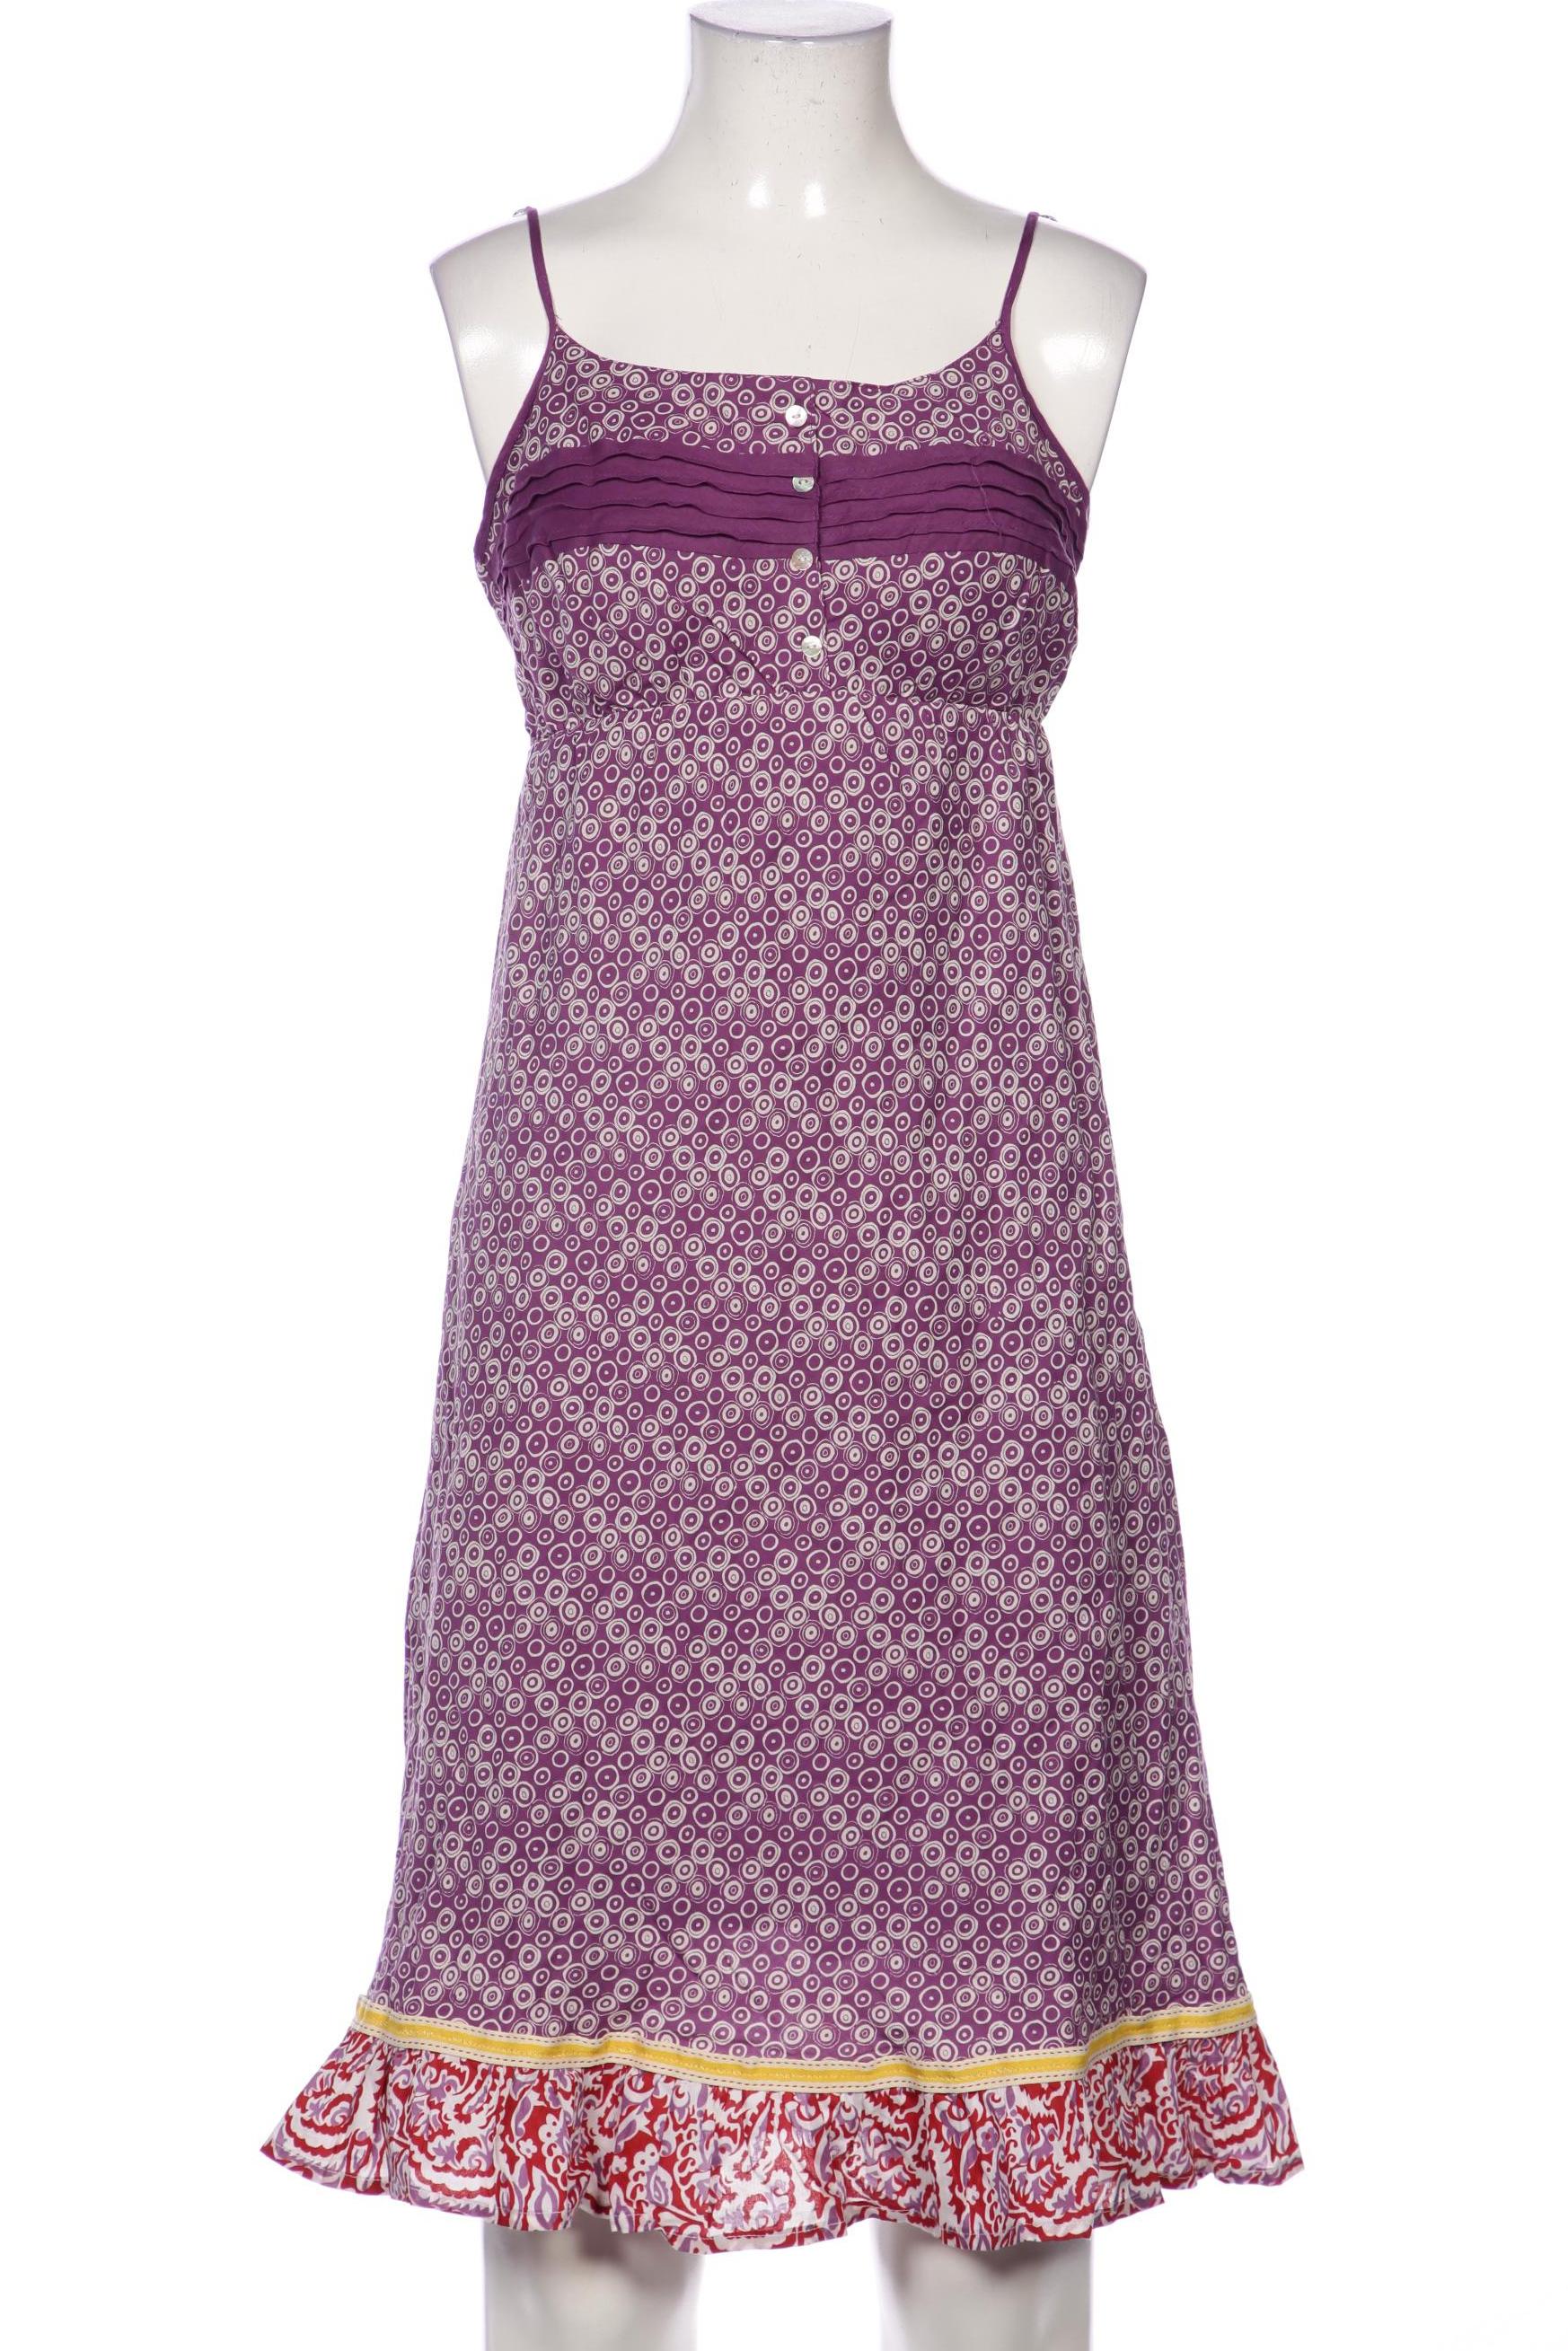 Maui Wowie Damen Kleid, flieder, Gr. 34 von maui wowie